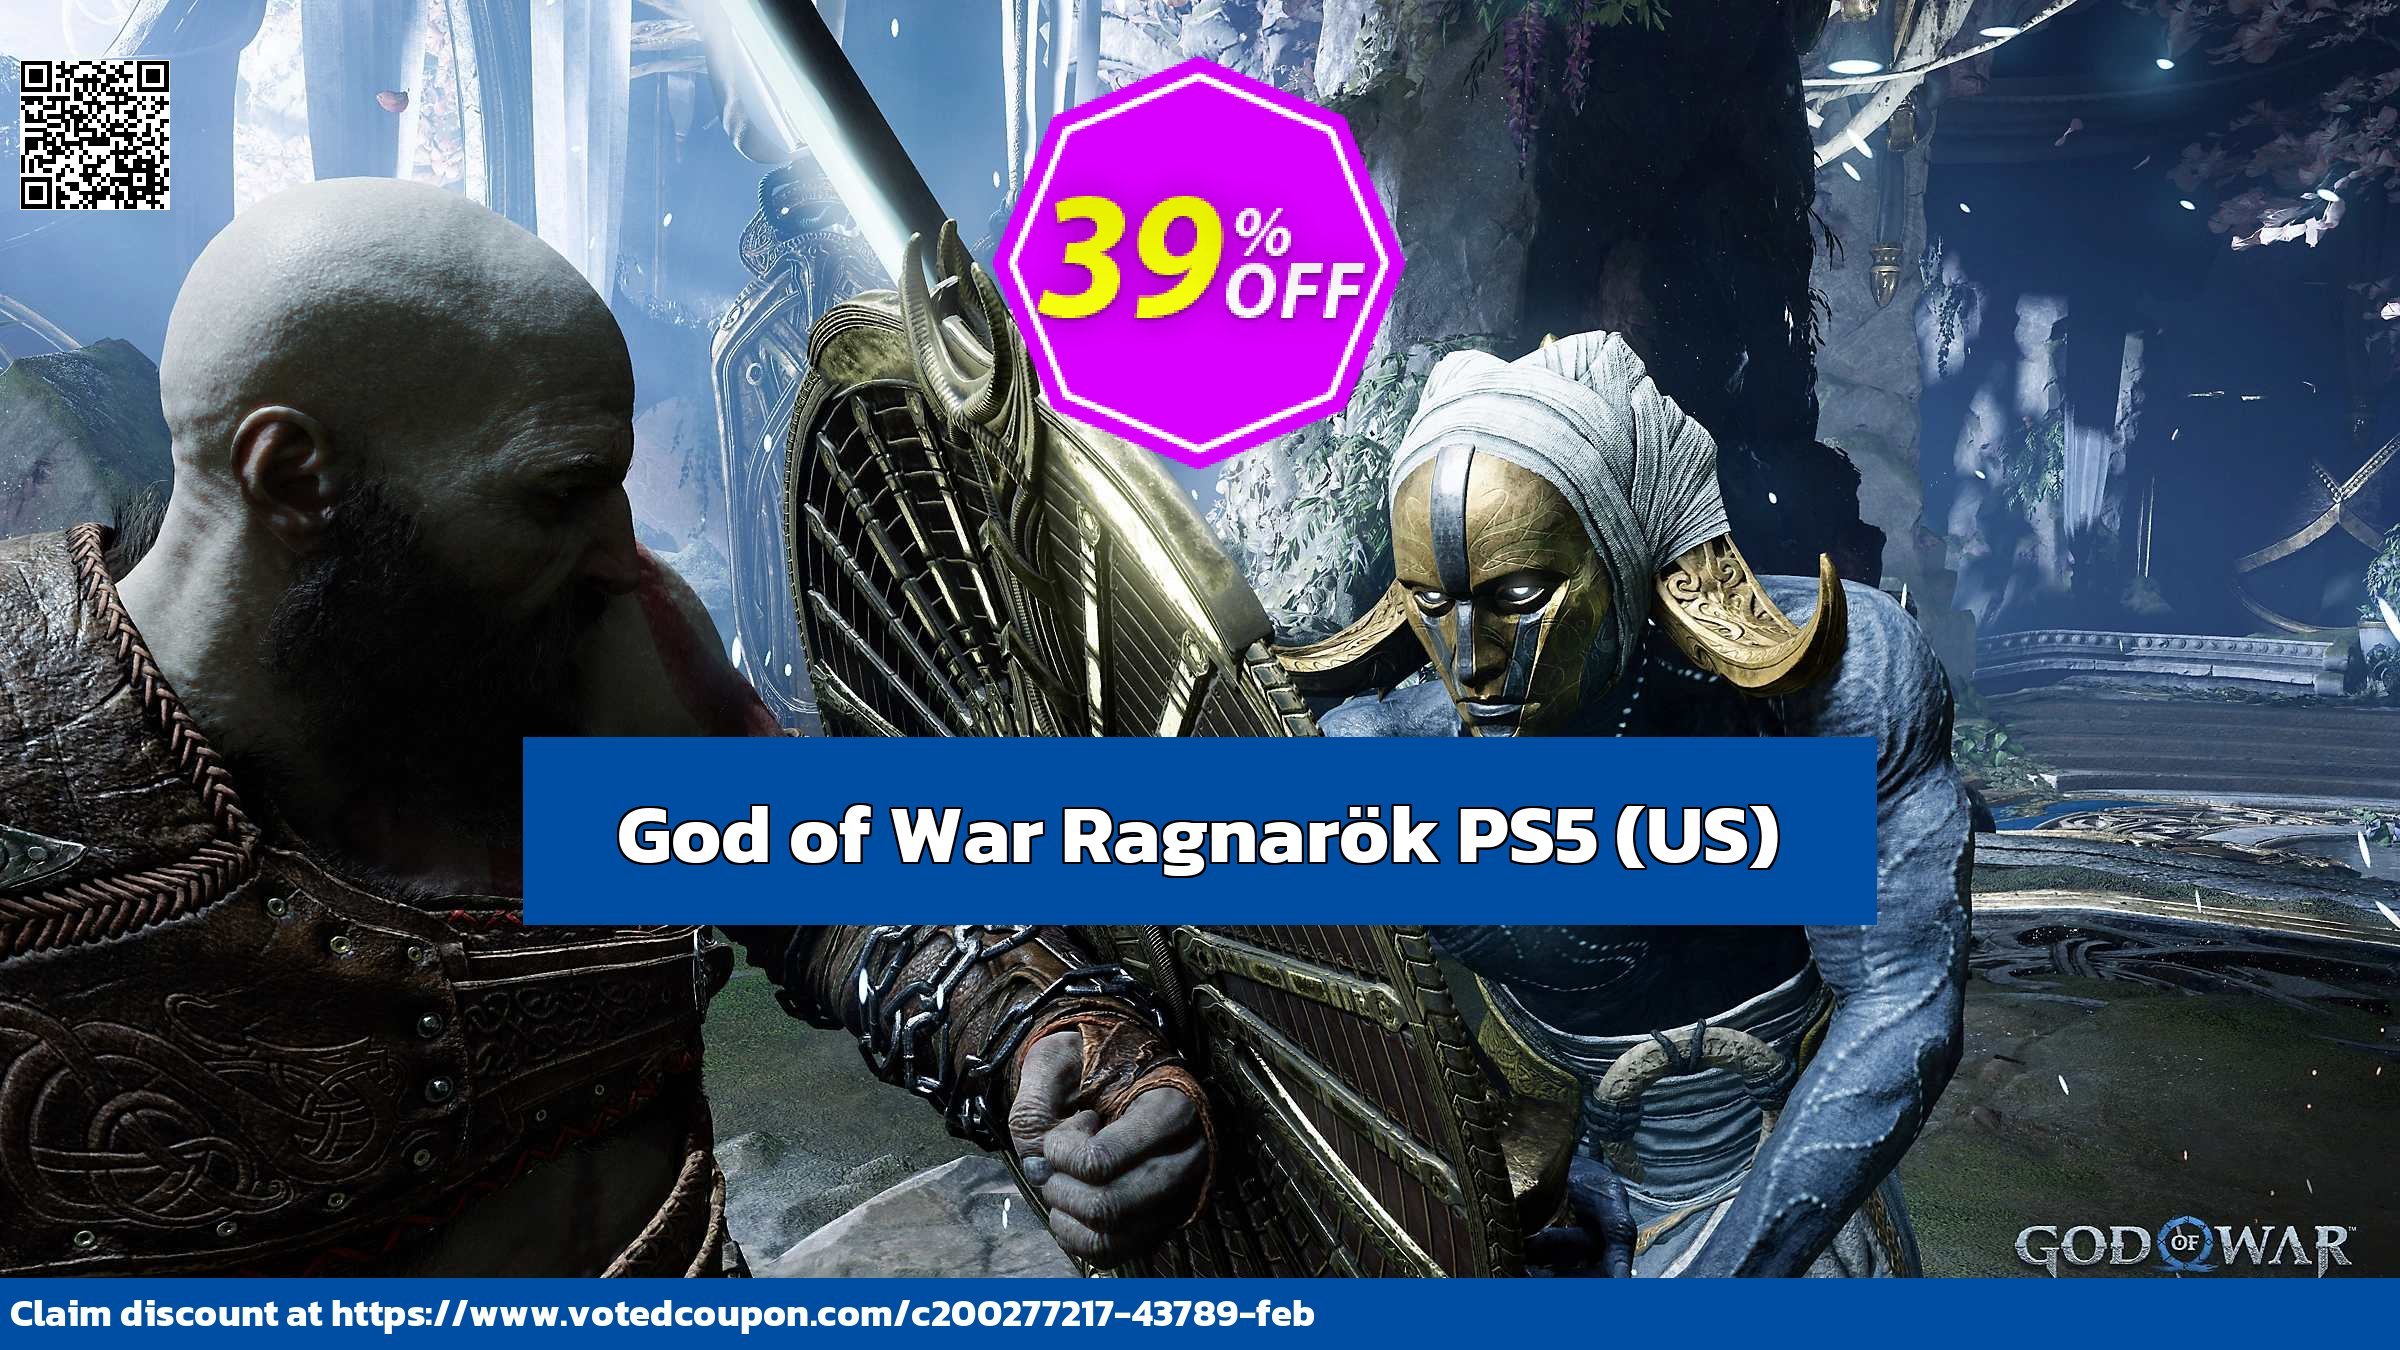 God of War Ragnarök PS5, US  Coupon, discount God of War Ragnarök PS5 (US) Deal CDkeys. Promotion: God of War Ragnarök PS5 (US) Exclusive Sale offer